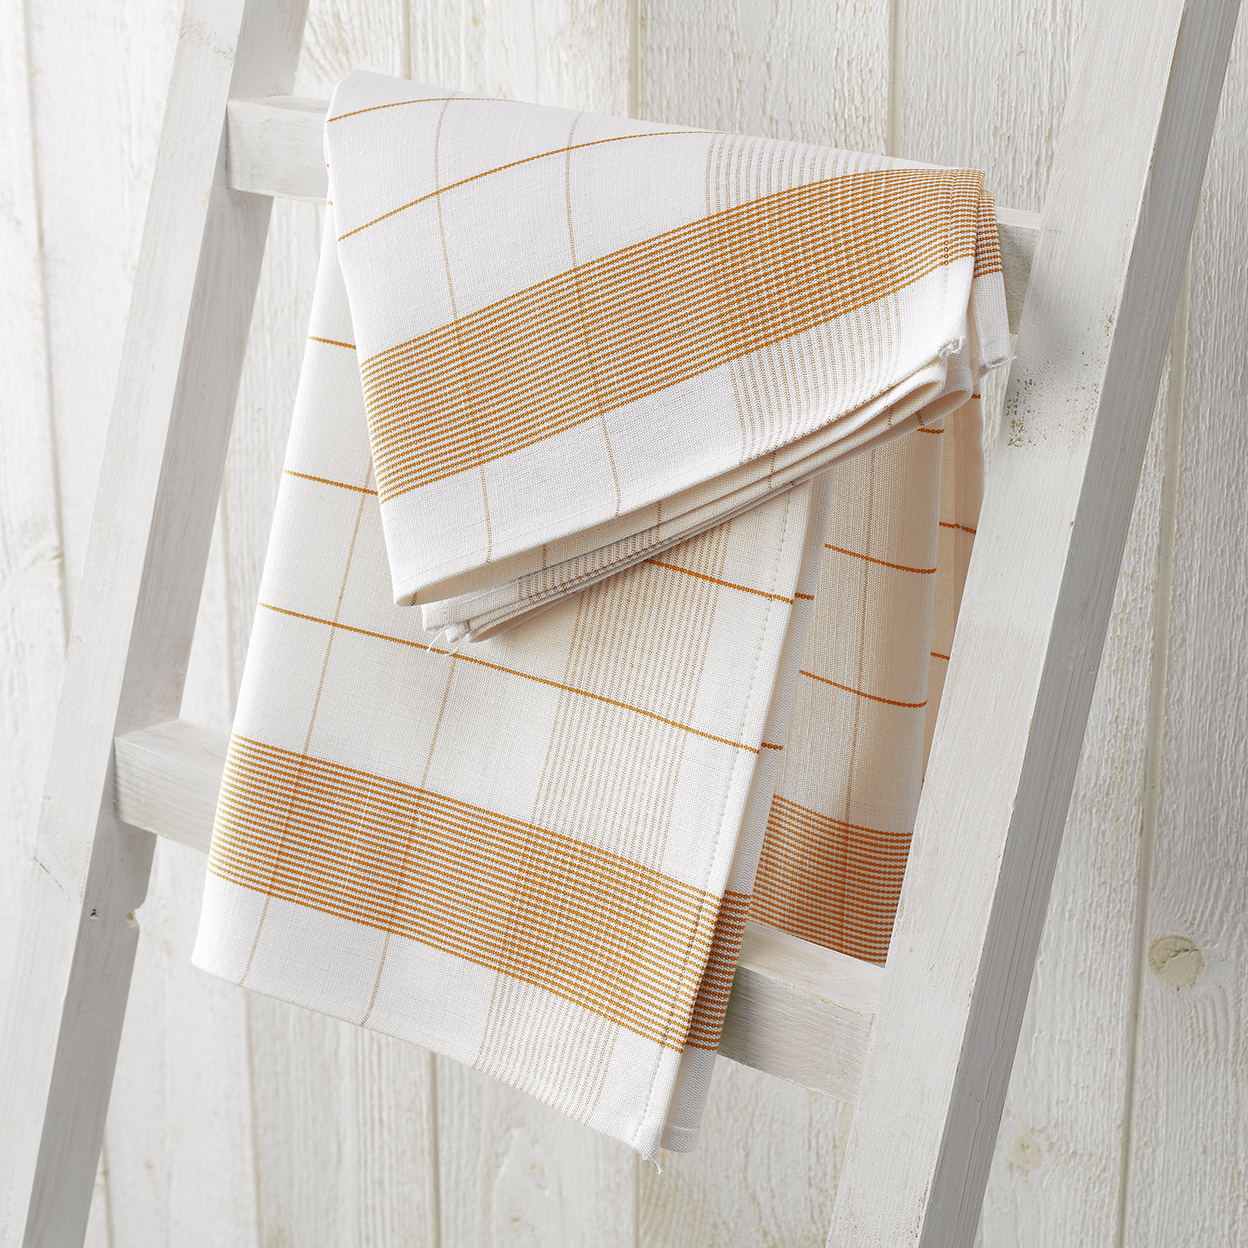 De Witte Lietaer Tea towel Mixte, Orange - 2 pieces - 65 x 65 cm - Cotton/Linen